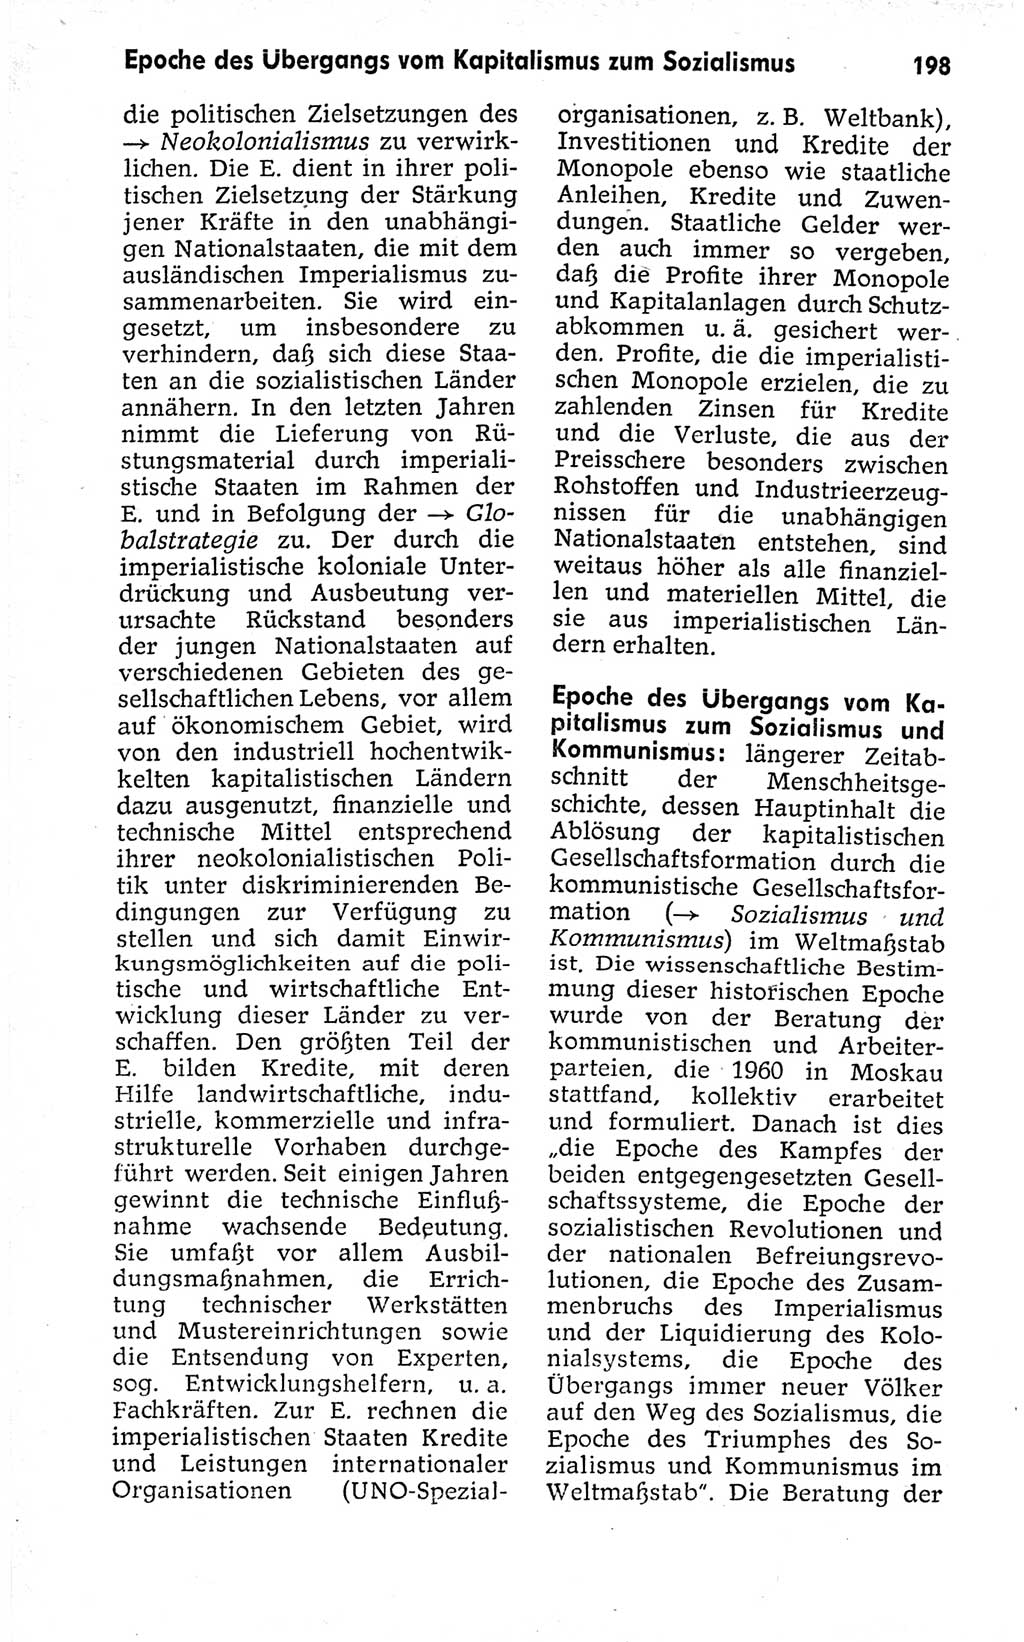 Kleines politisches Wörterbuch [Deutsche Demokratische Republik (DDR)] 1973, Seite 198 (Kl. pol. Wb. DDR 1973, S. 198)